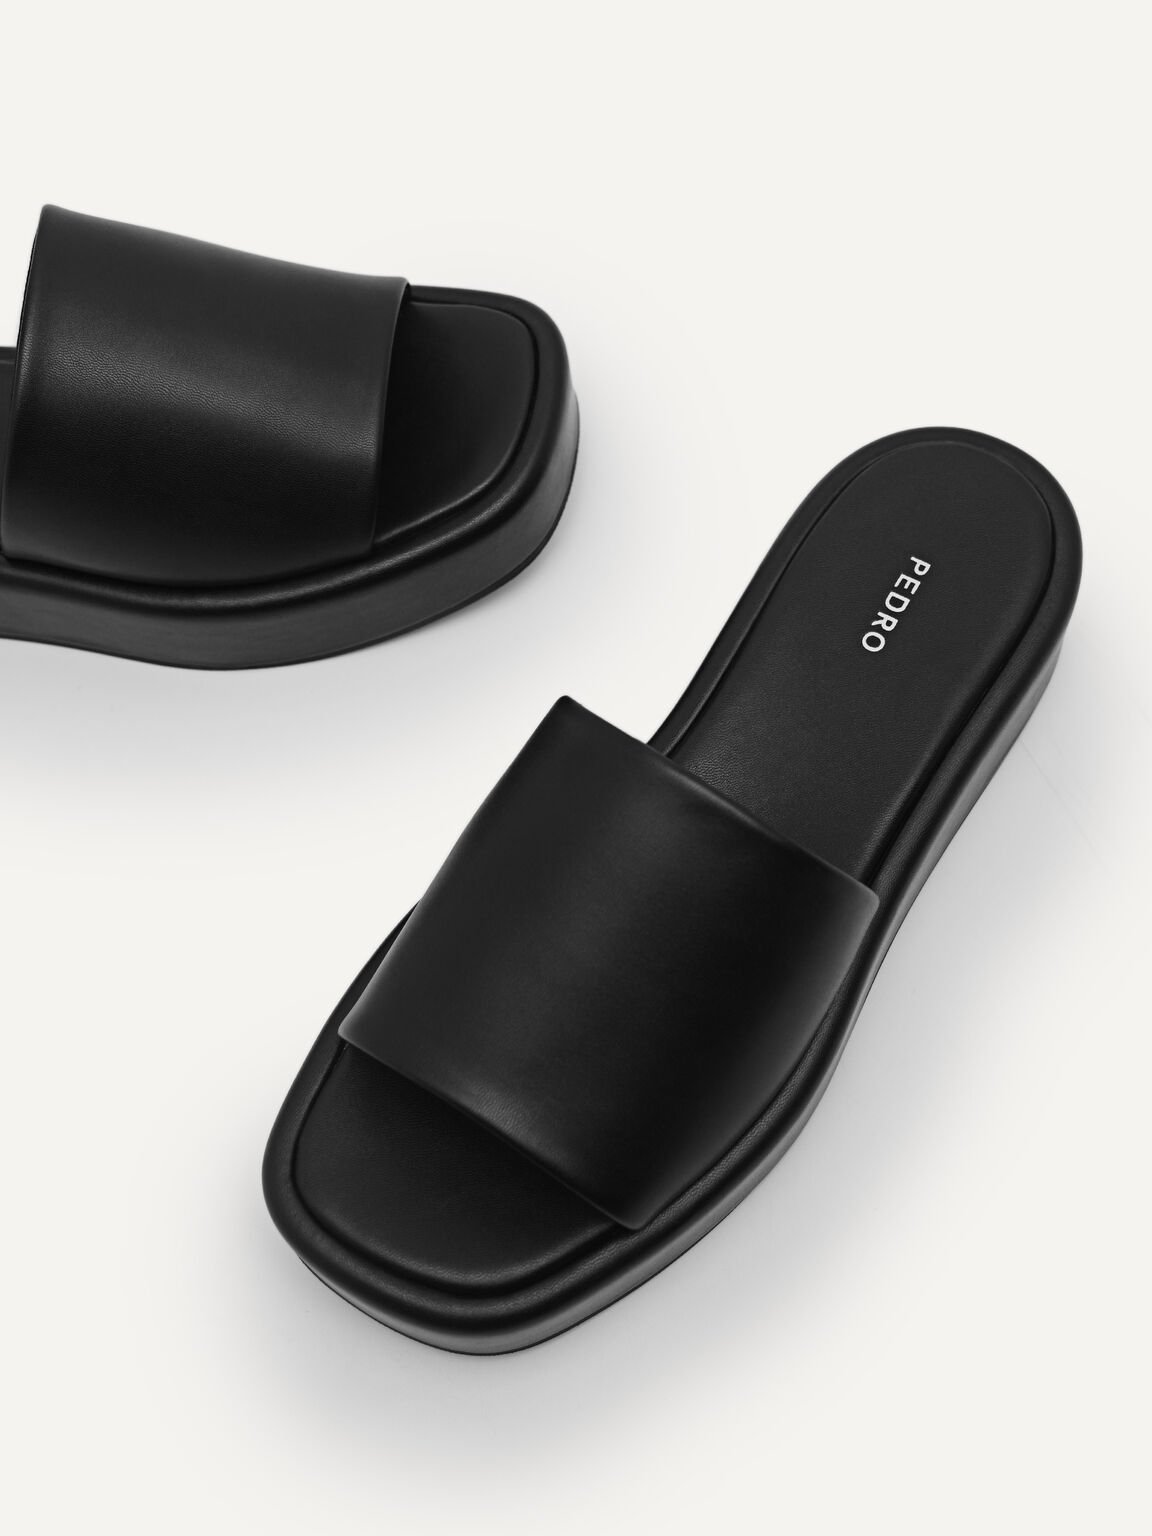 Slip-On Flatform Sandals, Black